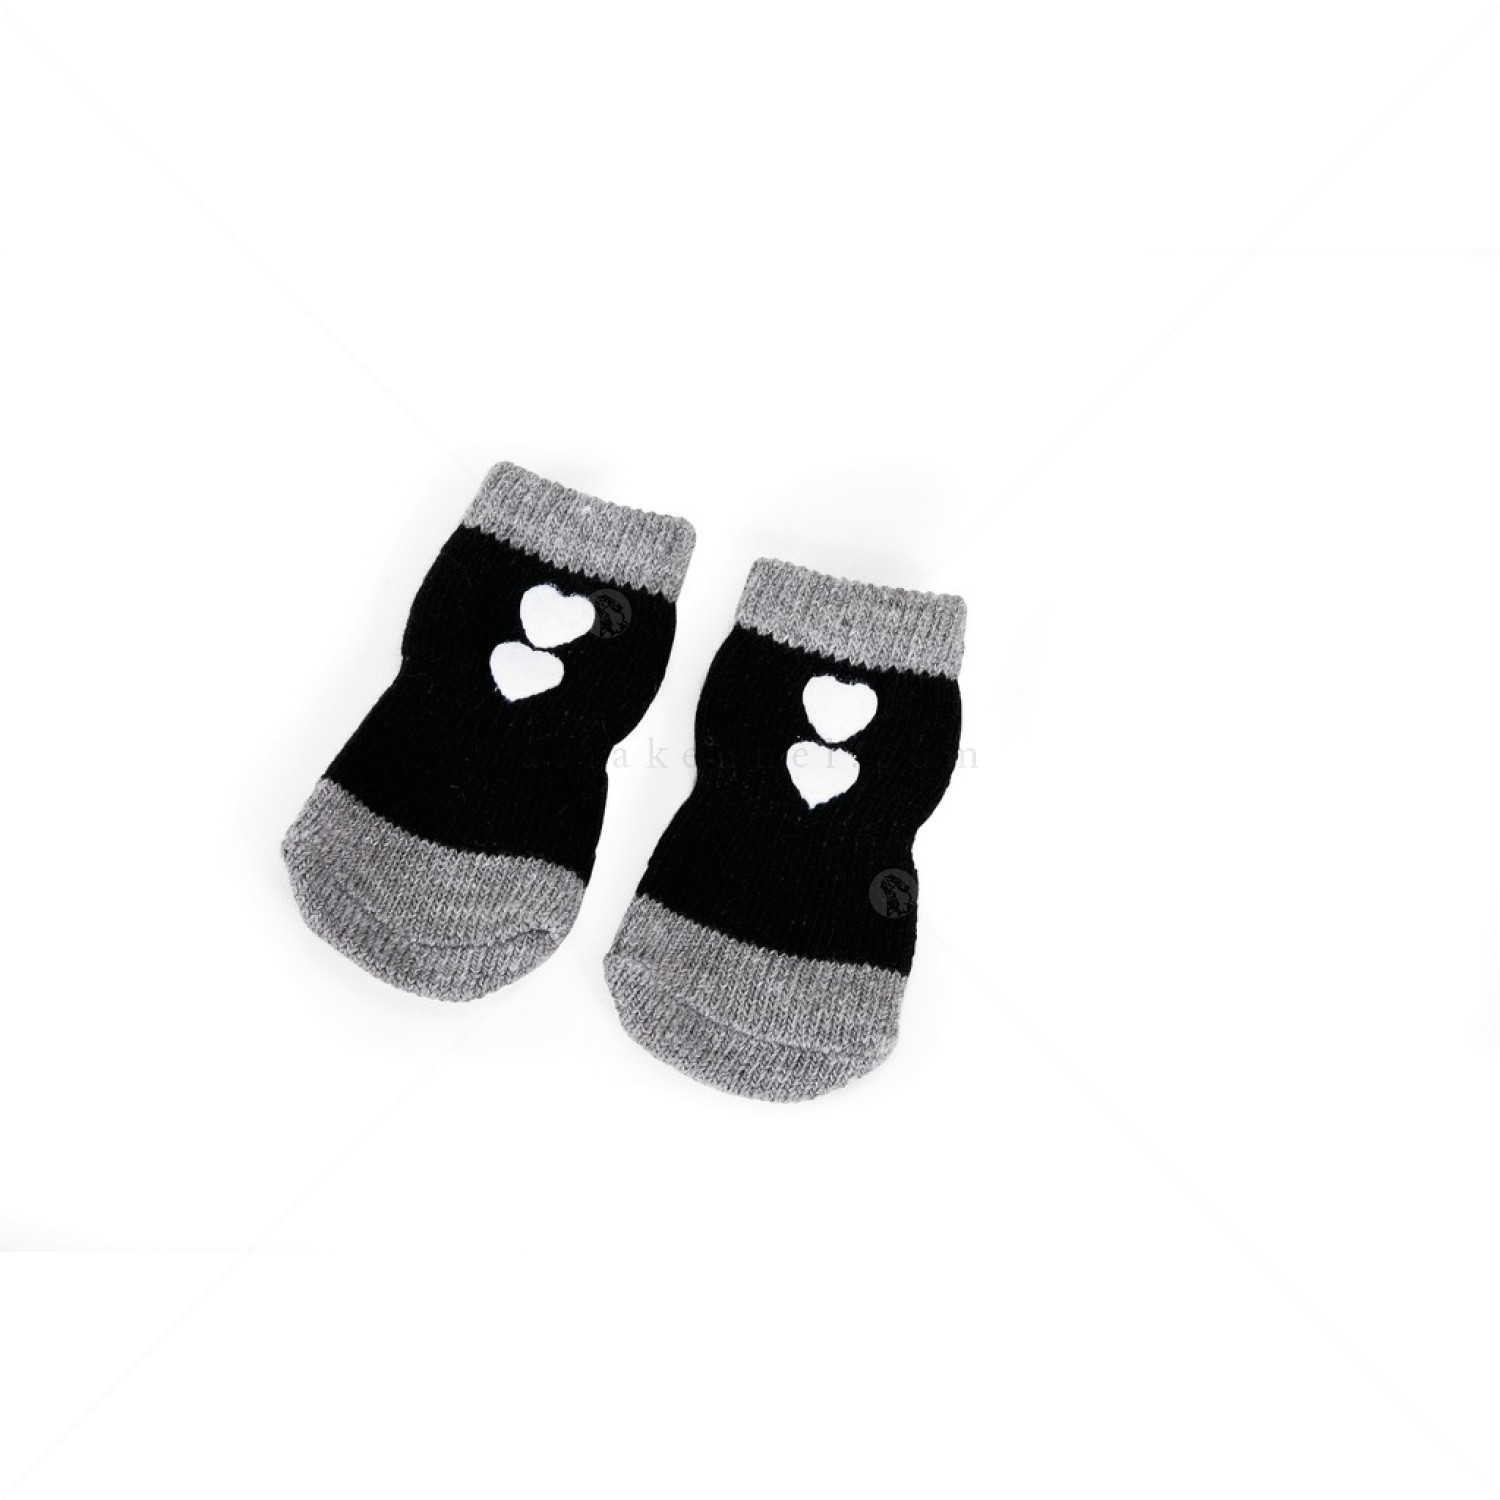 Противоплъзгащи се чорапи за кучета CAMON, размер 4,  4 бр, черни